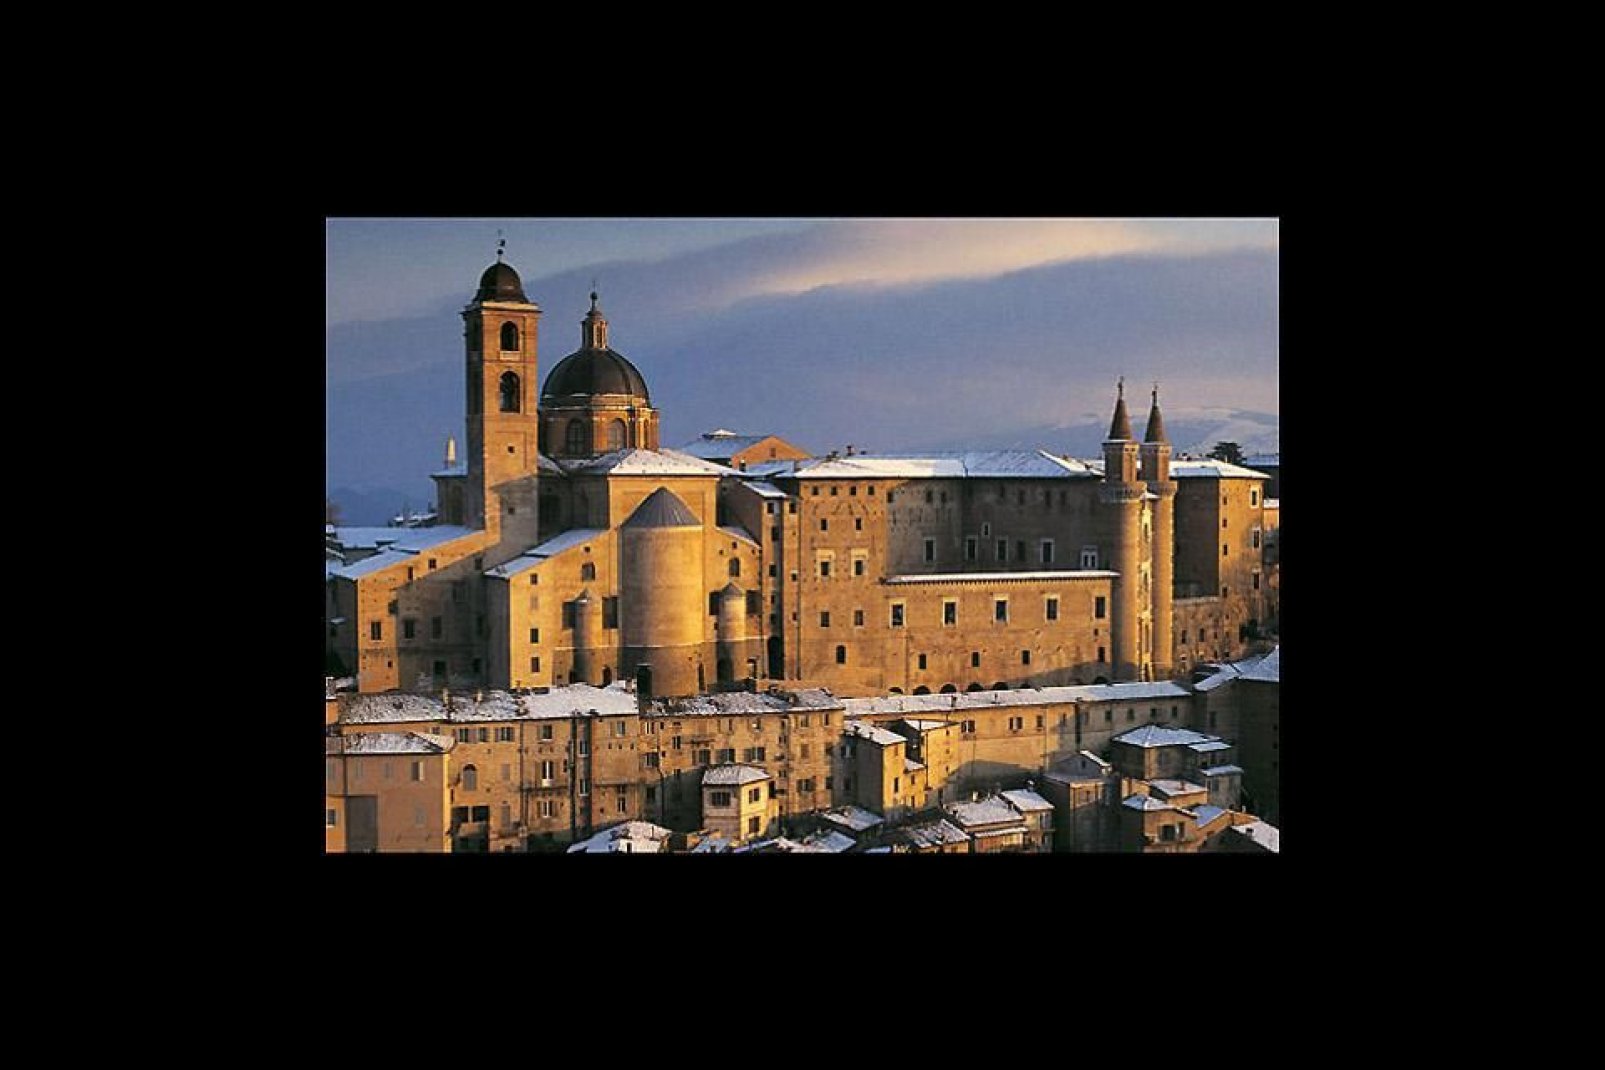 Urbino, con su rico pasado repleto de arte y de historia, ha sabido conservar numerosos e importantes monumentos: su casco histórico fue declarado Patrimonio de la Humanidad por la Unesco.